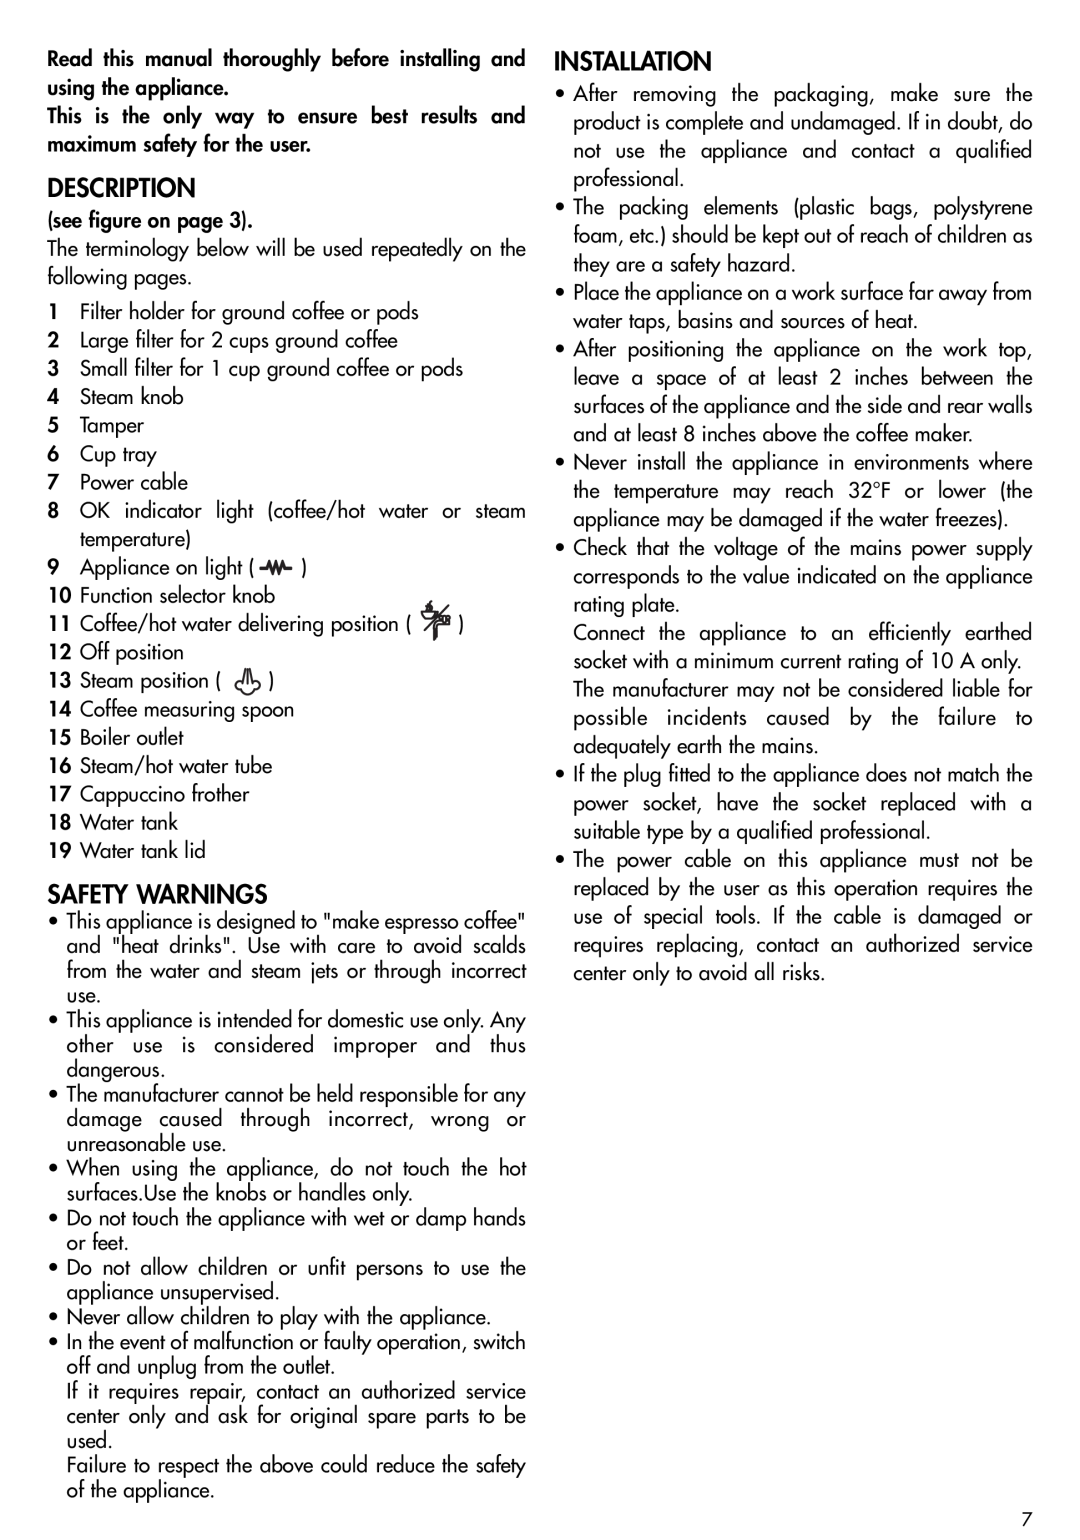 DeLonghi EC155 manual Description, Safety Warnings, Installation 